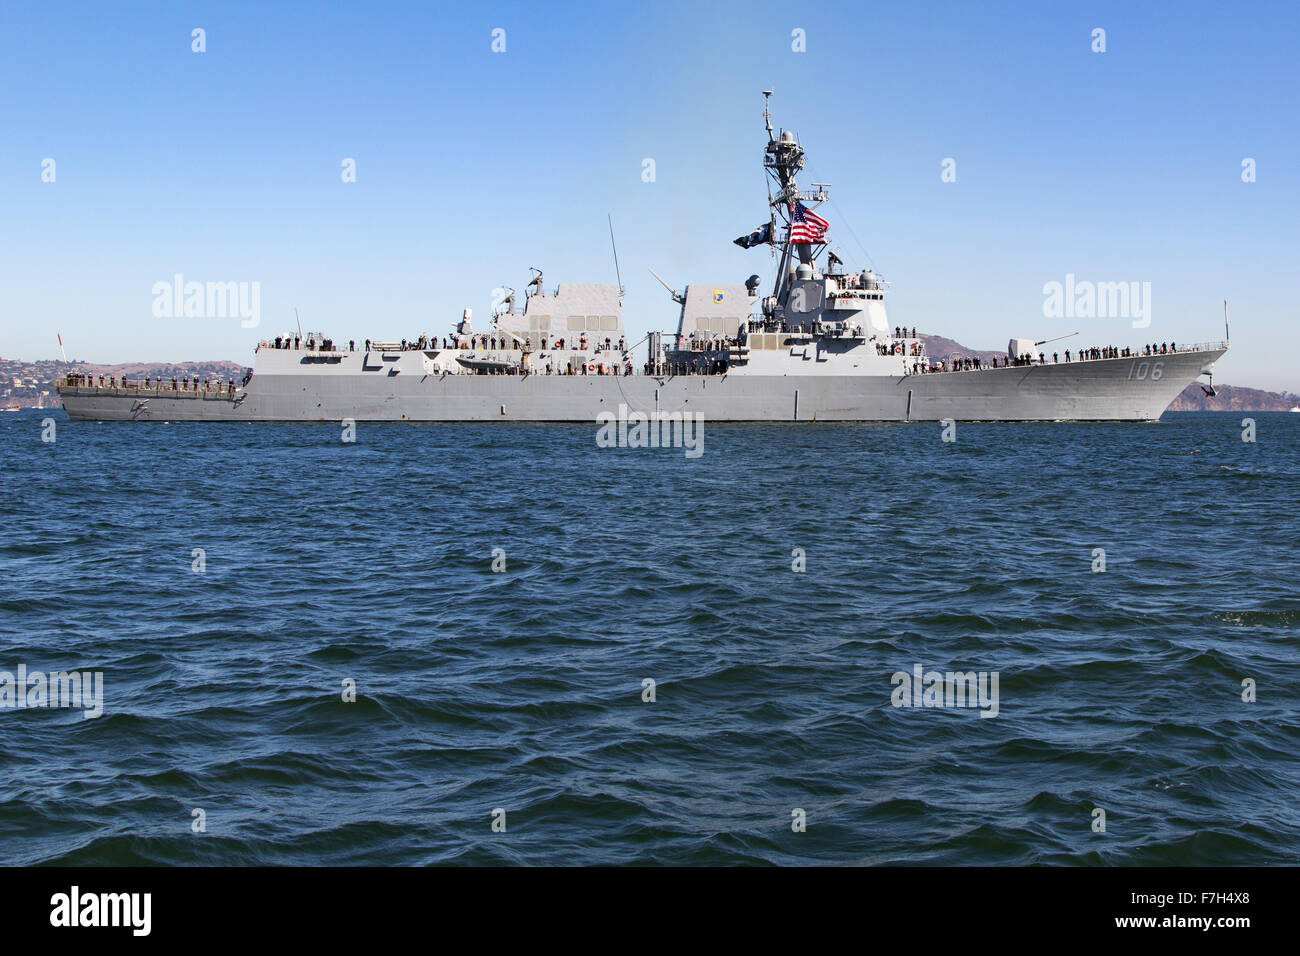 La classe Arleigh Burke destroyer lance-missiles USS Stockdale (DDG-106) onSan Francisco Bay. Banque D'Images